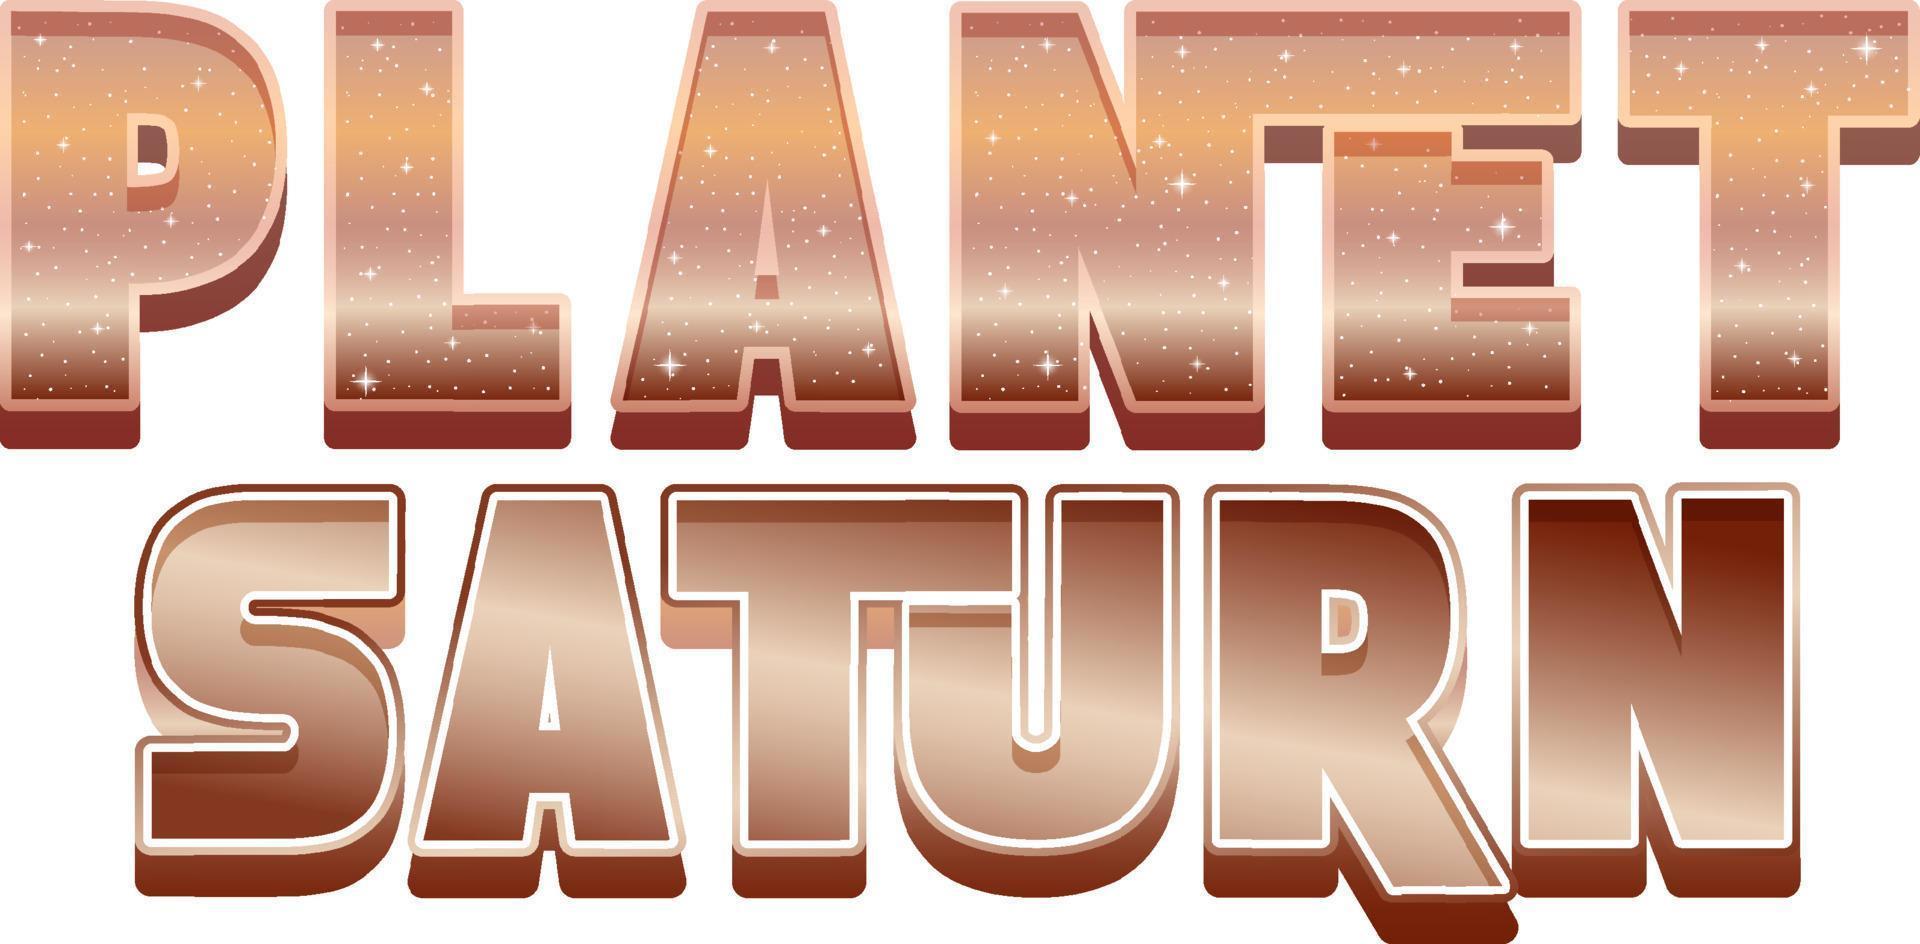 diseño del logotipo de la palabra planeta saturno vector